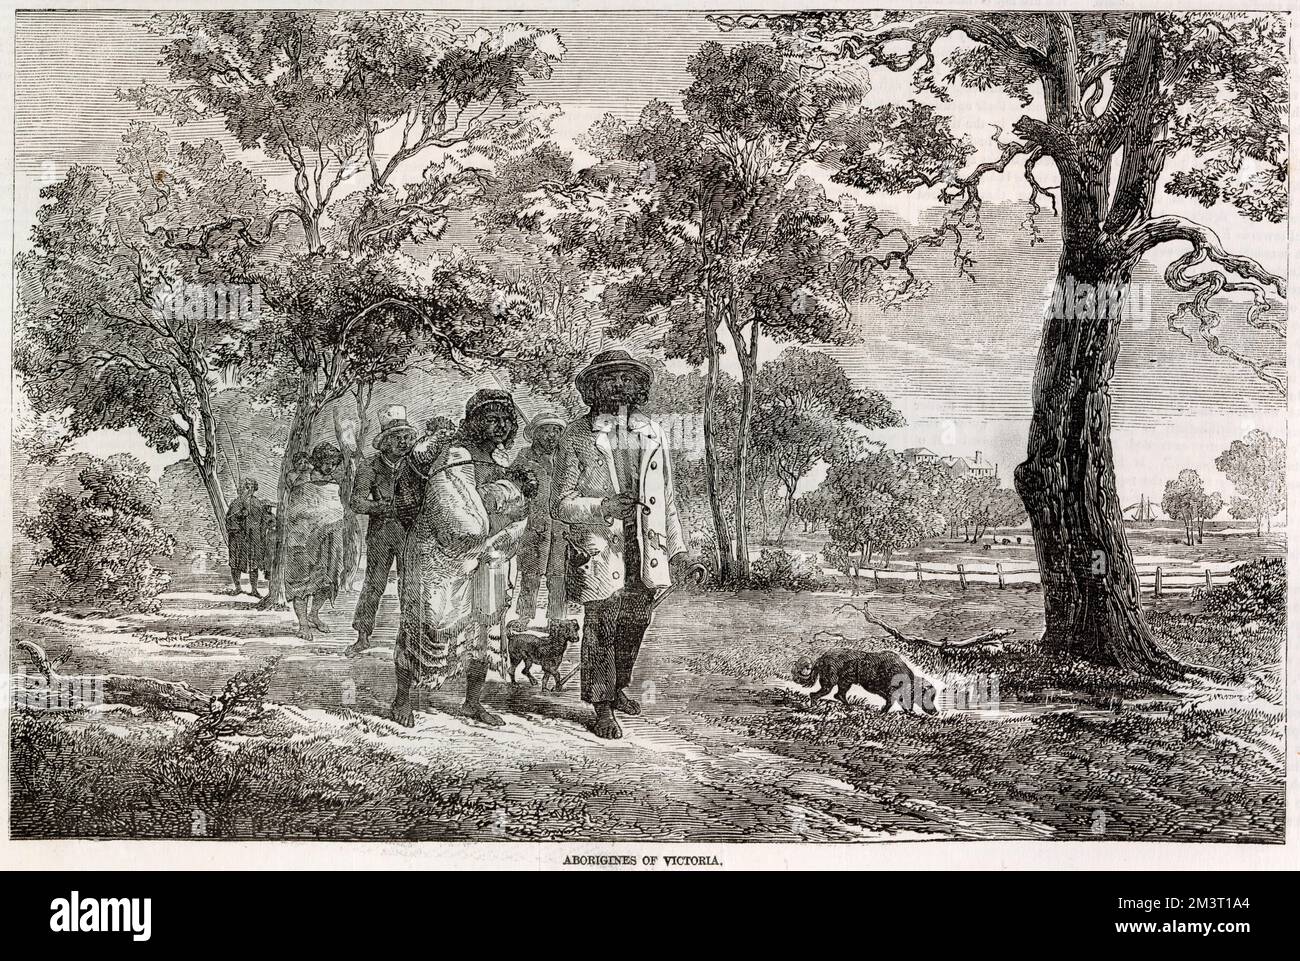 Szene mit den Aborigines of Victoria, die in den illustrierten London News gezeigt wird. Hier werden die einheimischen Australier beschrieben, die manchmal Städte in einer Mischung aus abgespritzter europäischer Kleidung und ihrer traditionellen Kleidung besuchen. Stockfoto